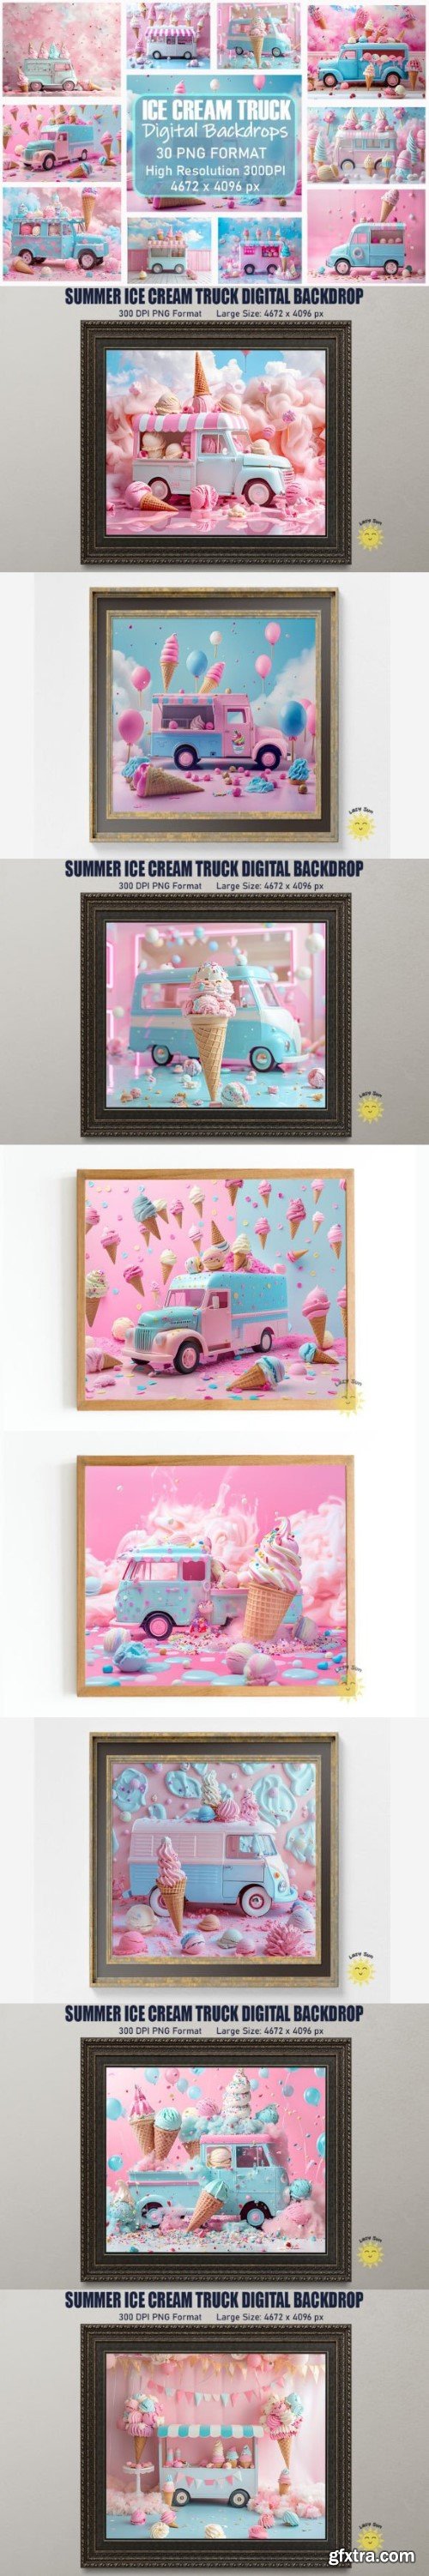 Summer Ice Cream Truck Digital Backdrops